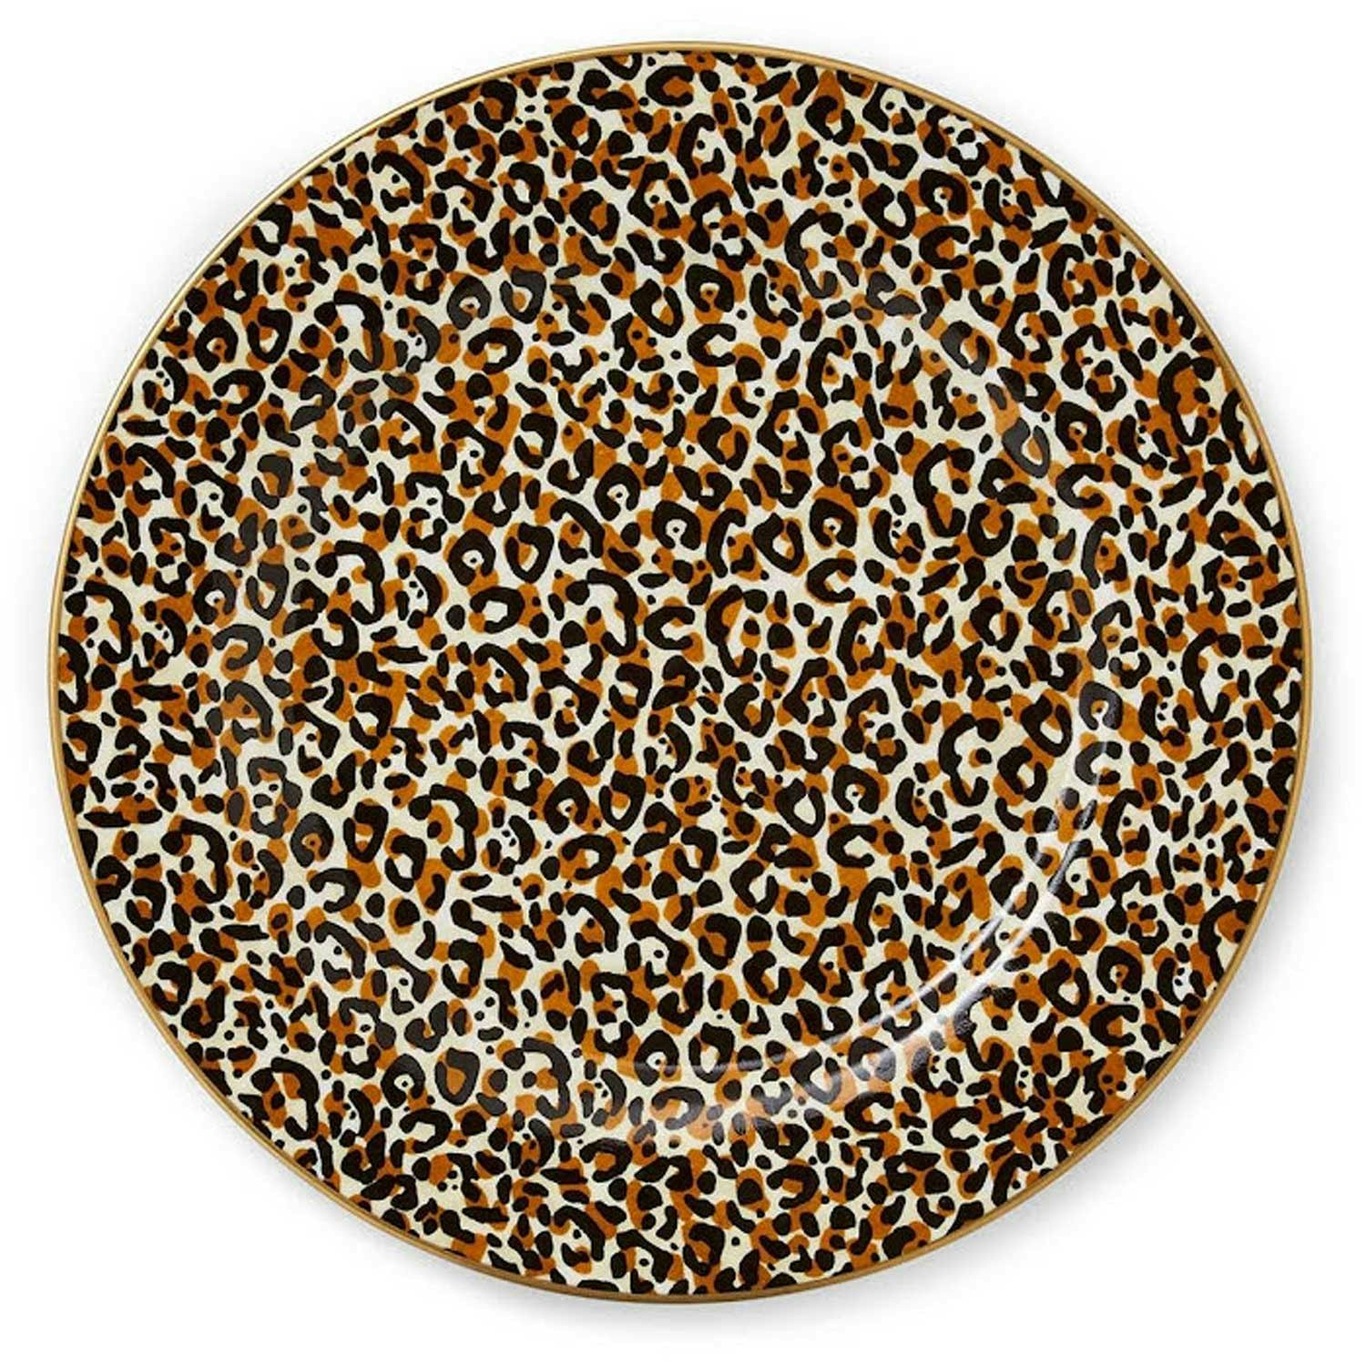 Creatures Of Curiosity Assiett Leopard, 20,5 cm